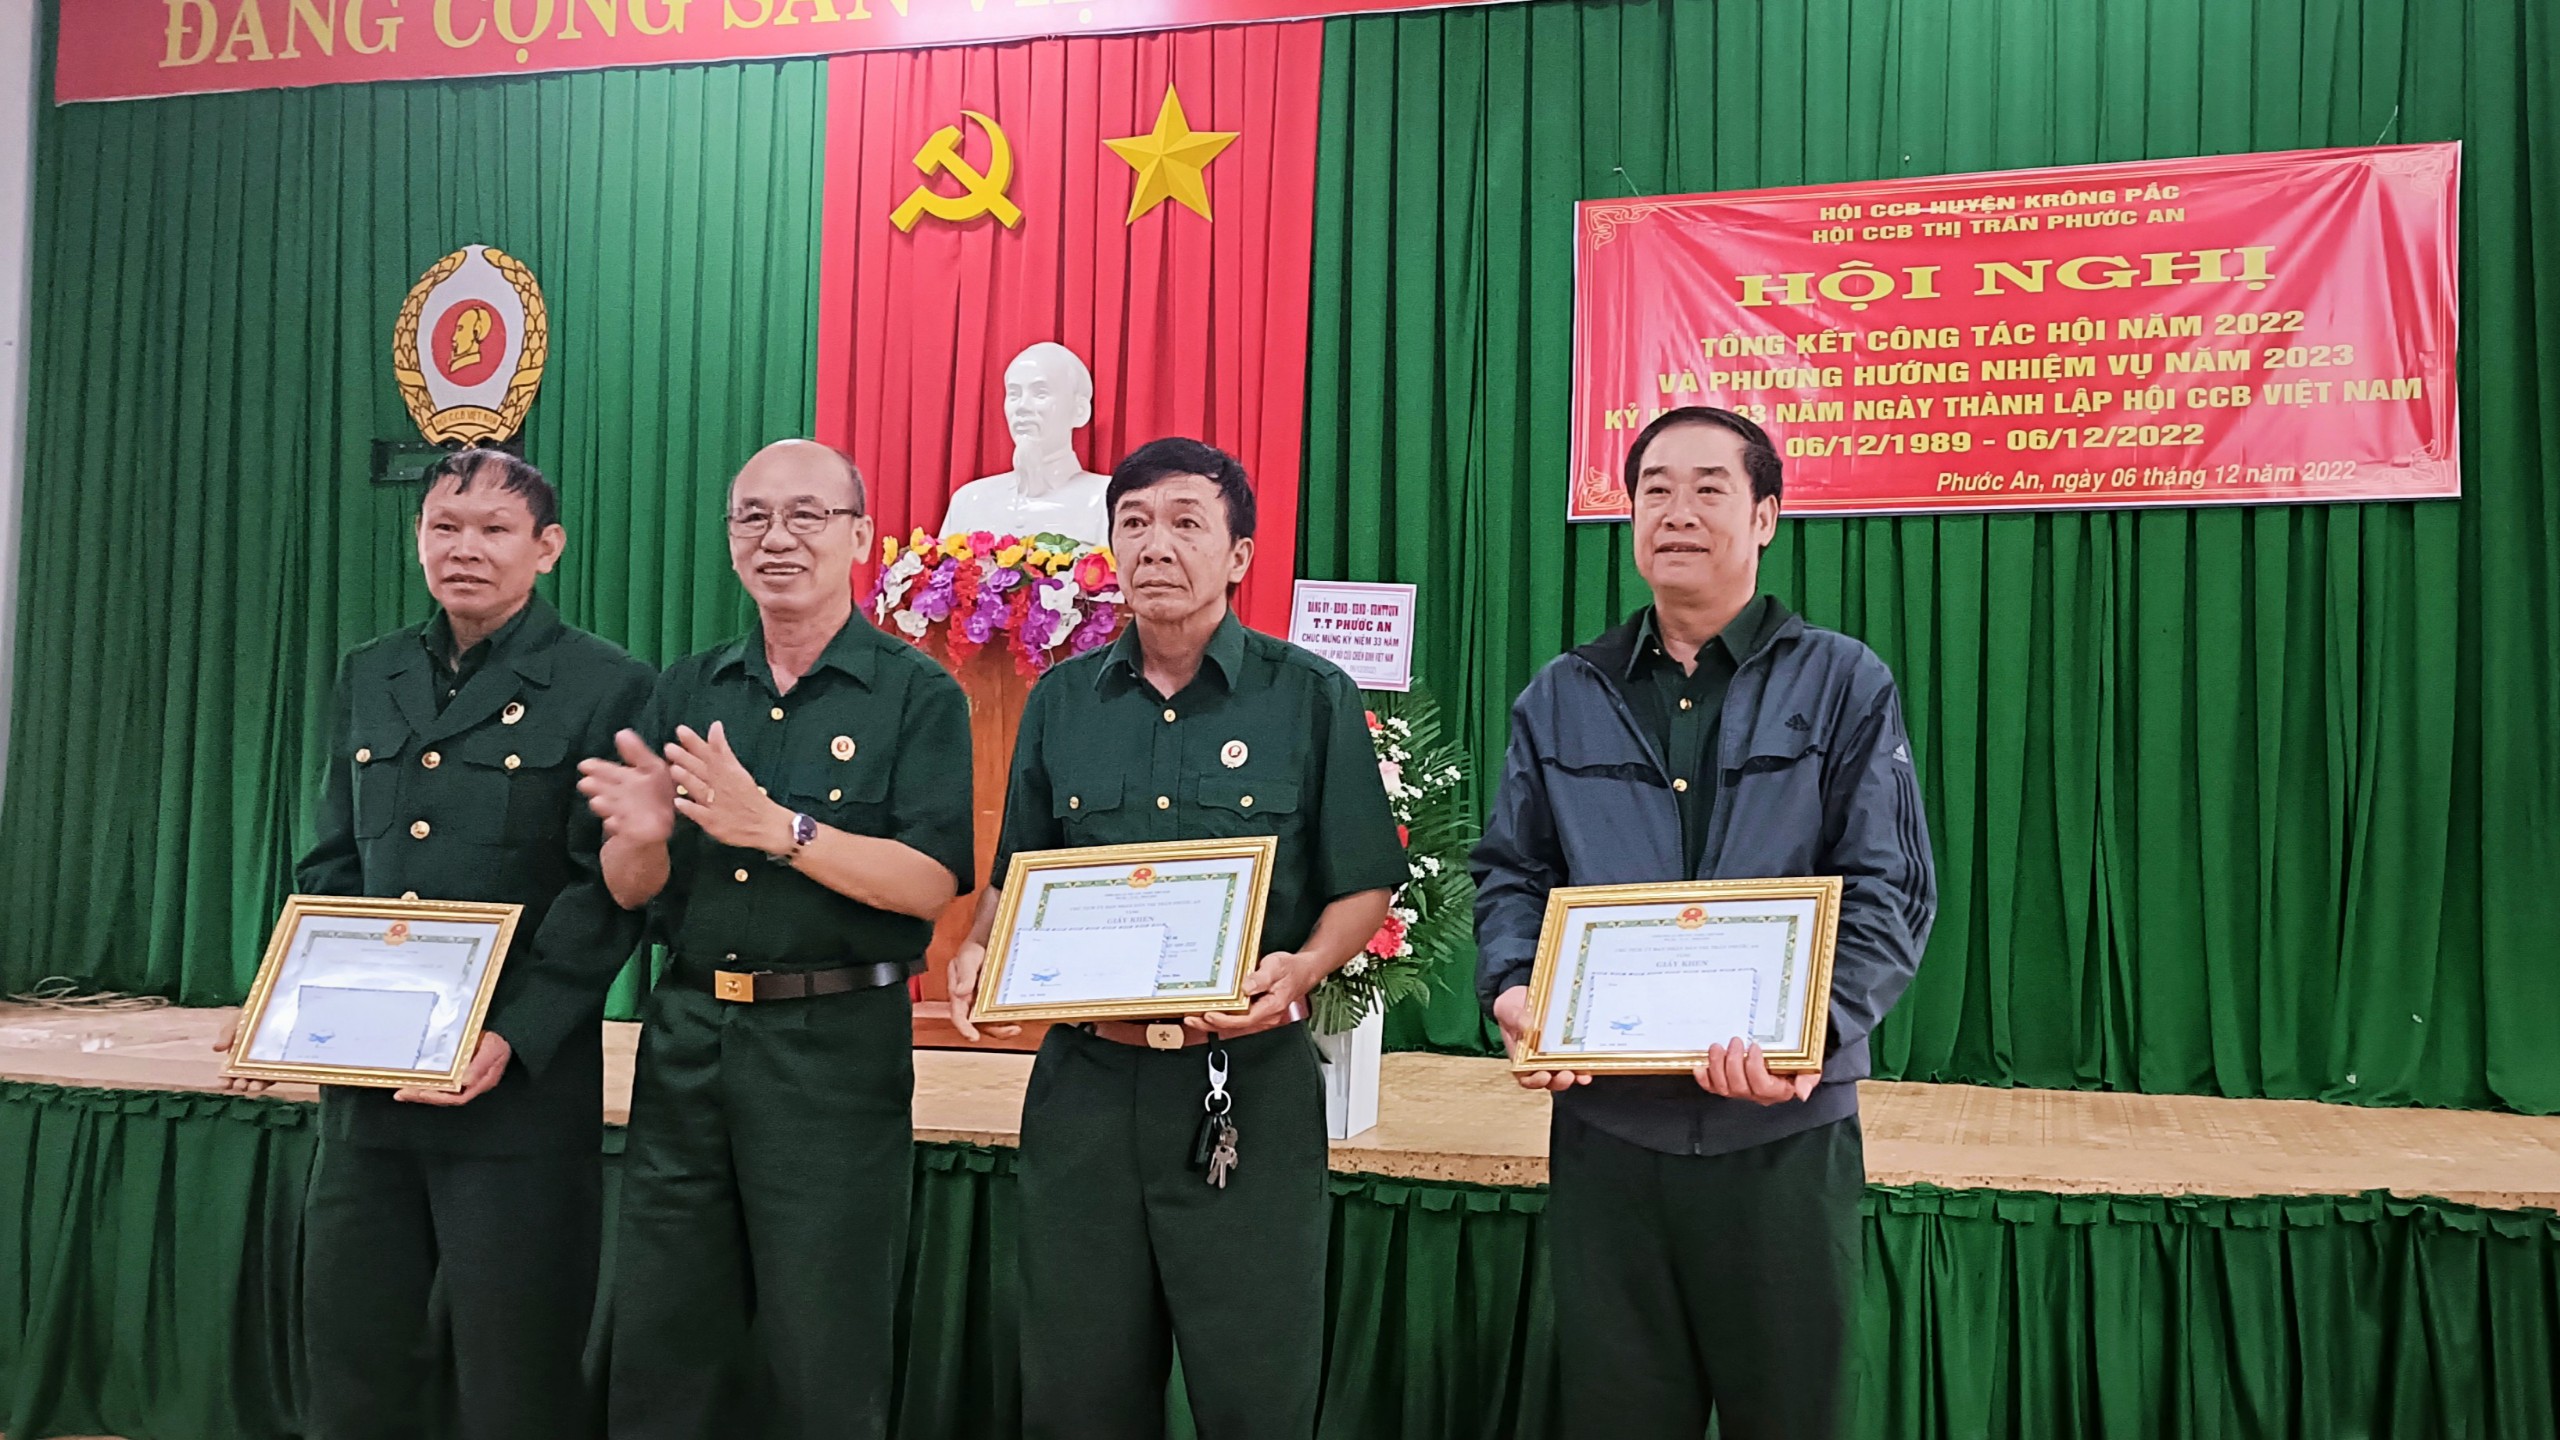 Hội CCB thị trấn Phước An tổ chức kỷ niệm 33 năm ngày thành lập Hội CCB Việt Nam (6/12/1989- 6/12/2022) và tổng kết công tác Hội CCB năm 2022